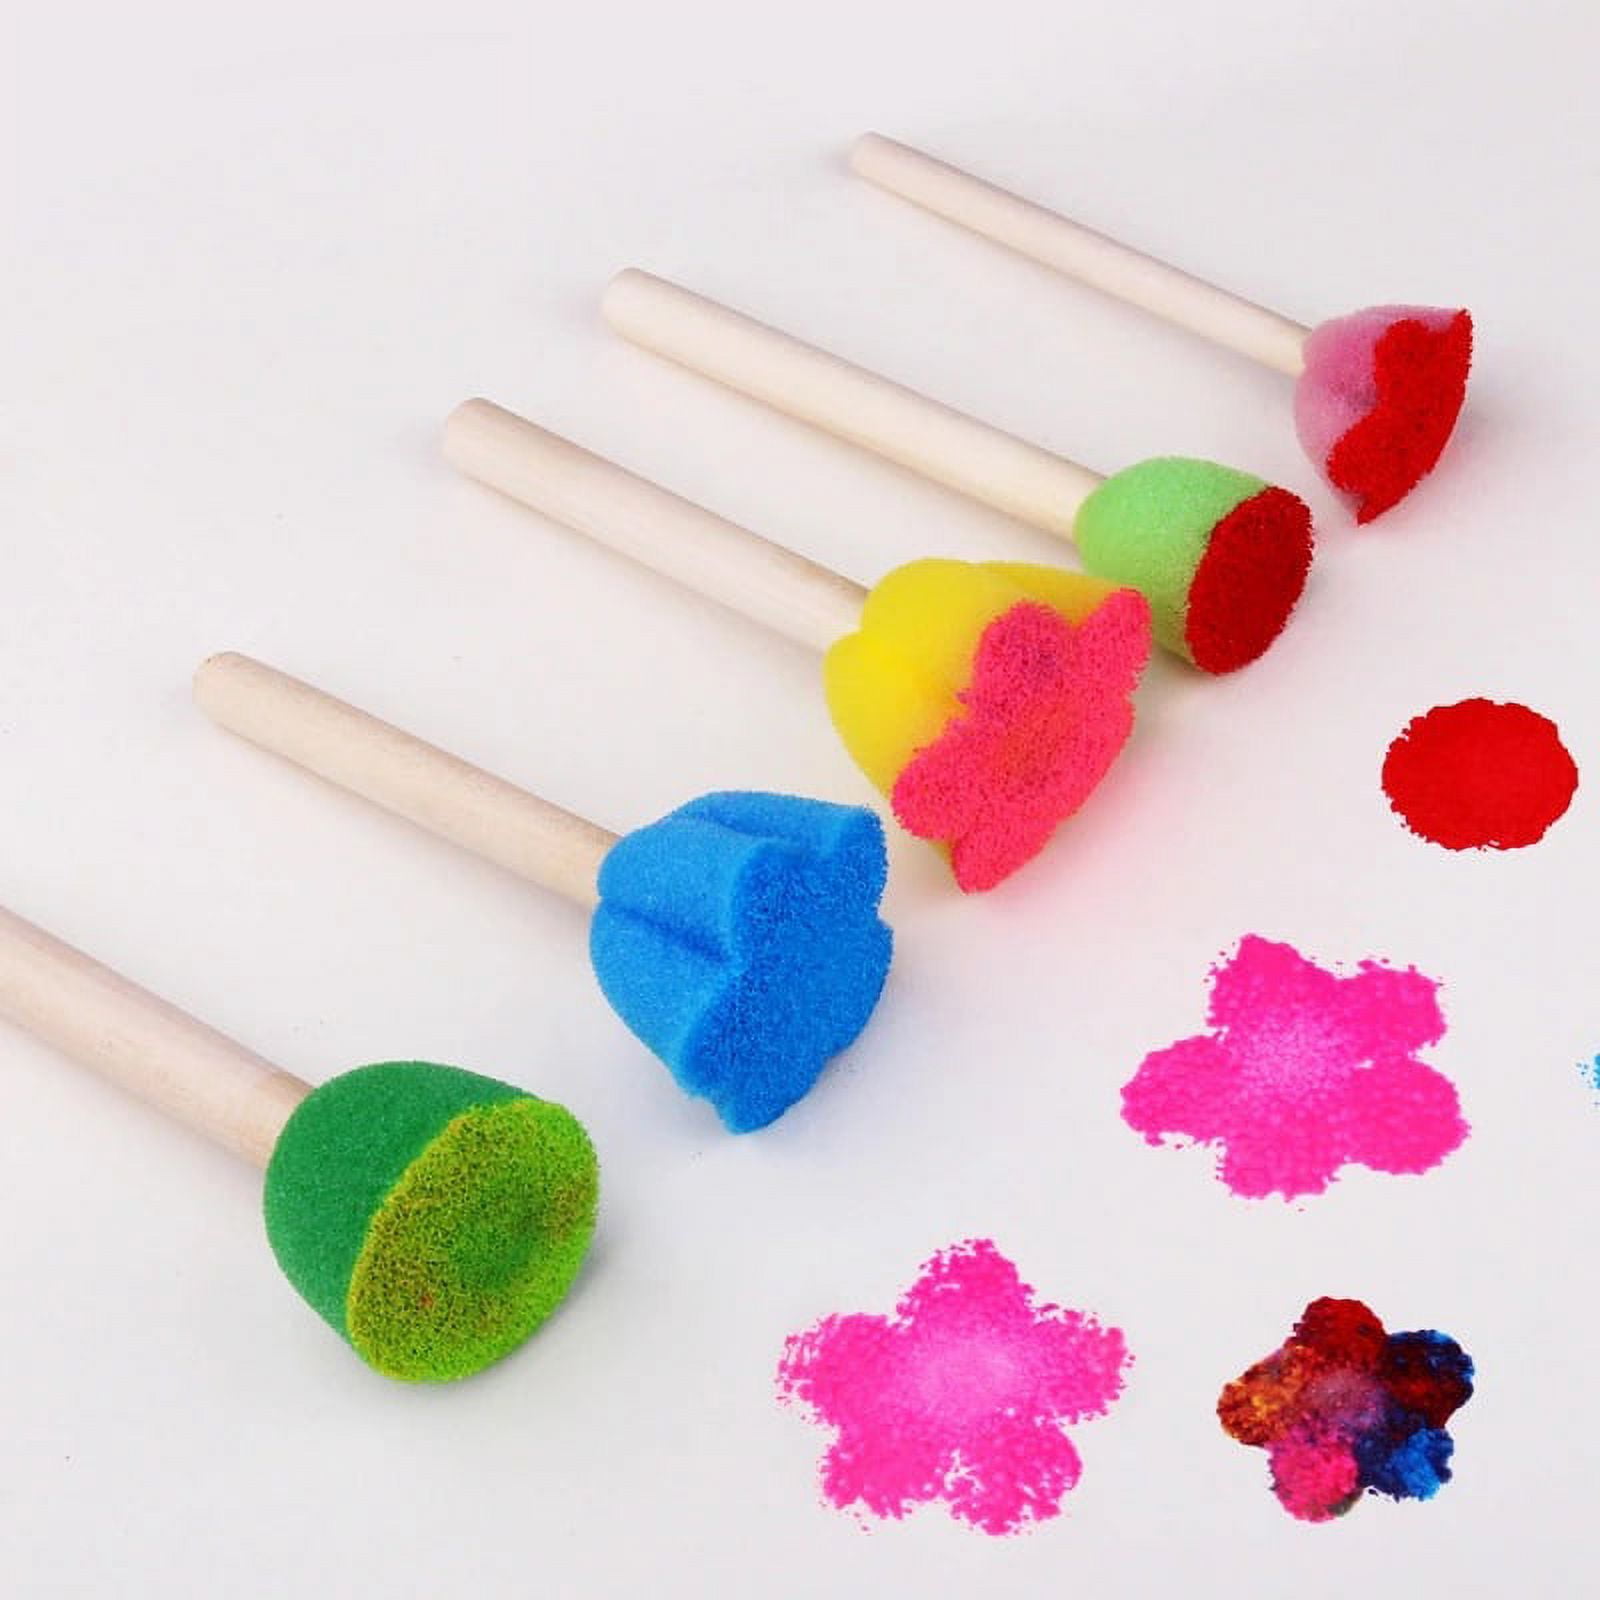 Glokers Early Learning Kids Paint Set, 21 Piece Mini Flower Sponge Pai